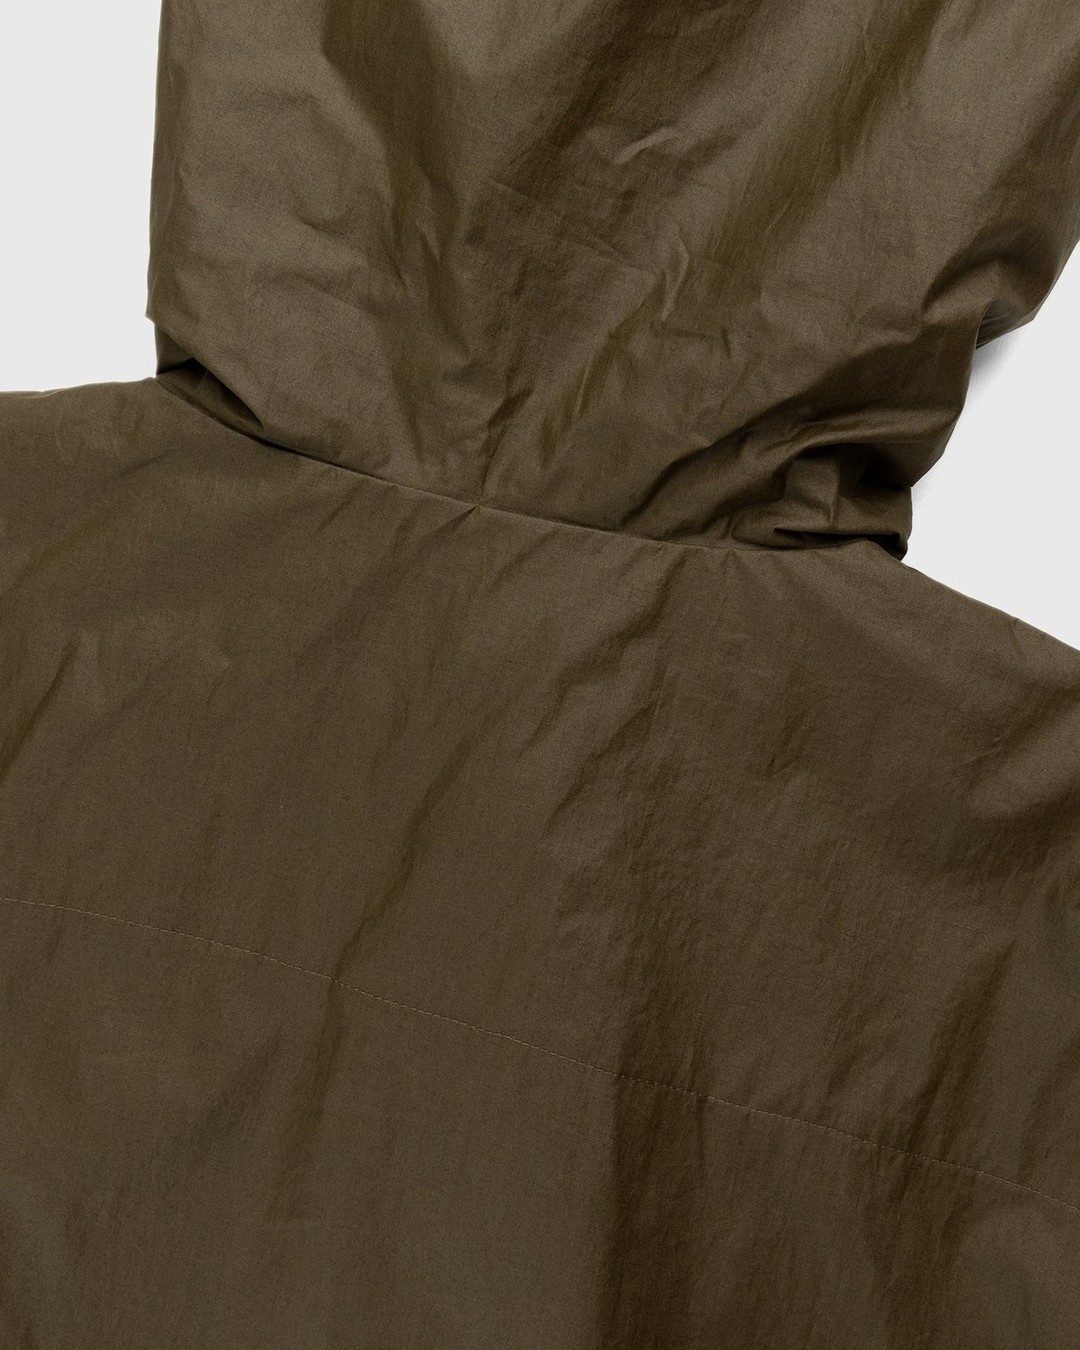 Arnar Mar Jonsson – Skel Hooded Jacket Beige/Chocolate